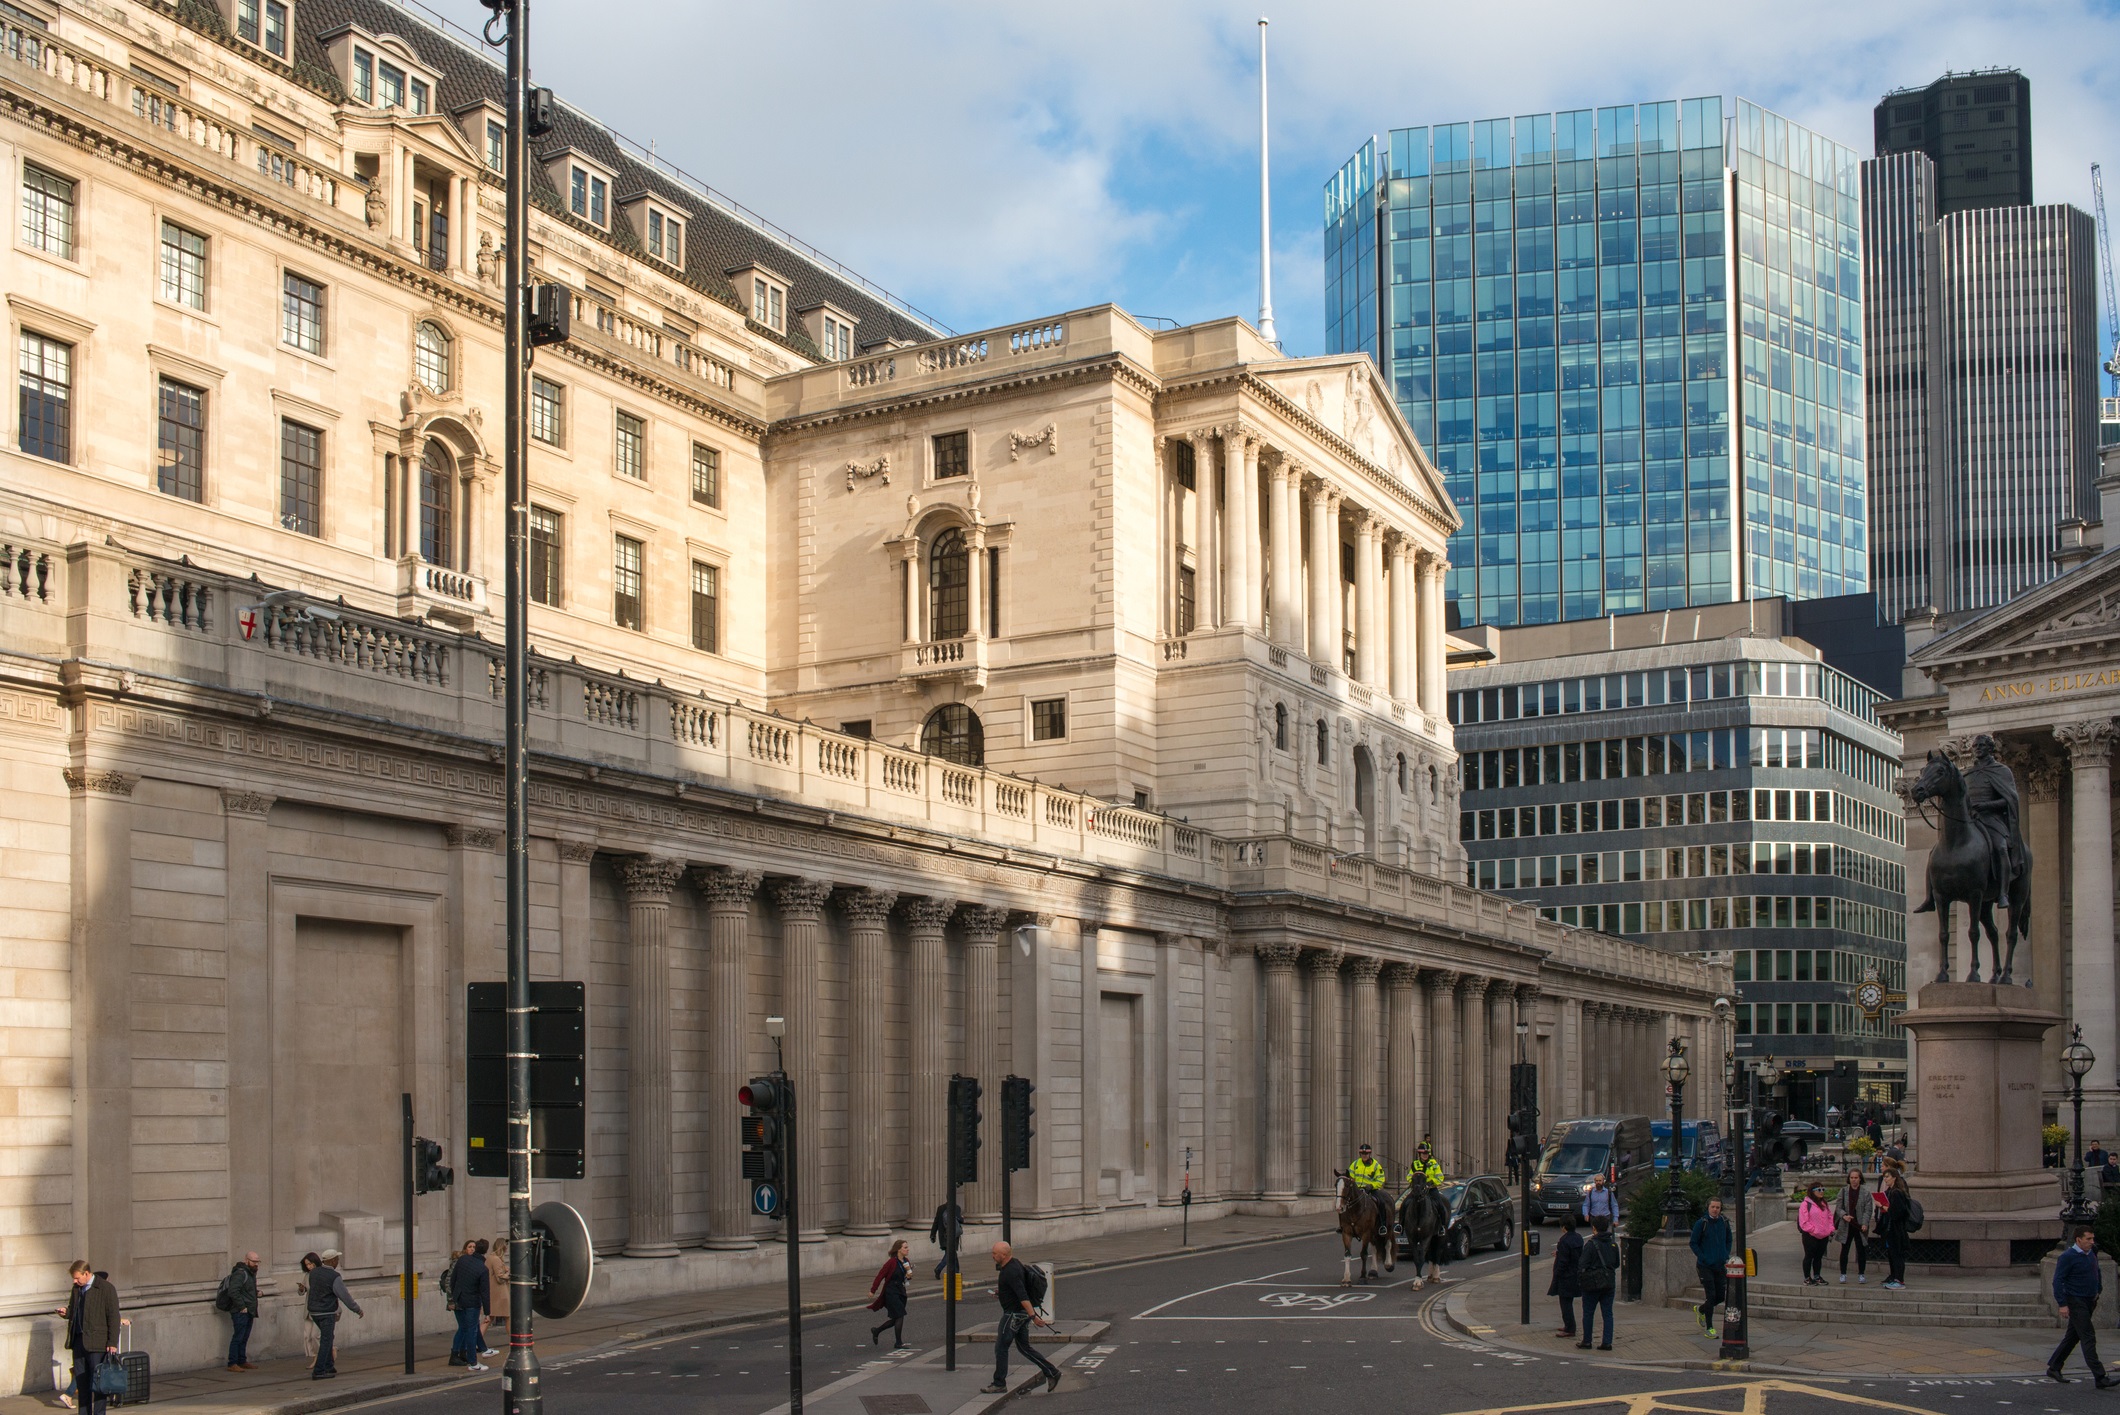 Bank of England London UK stock photo